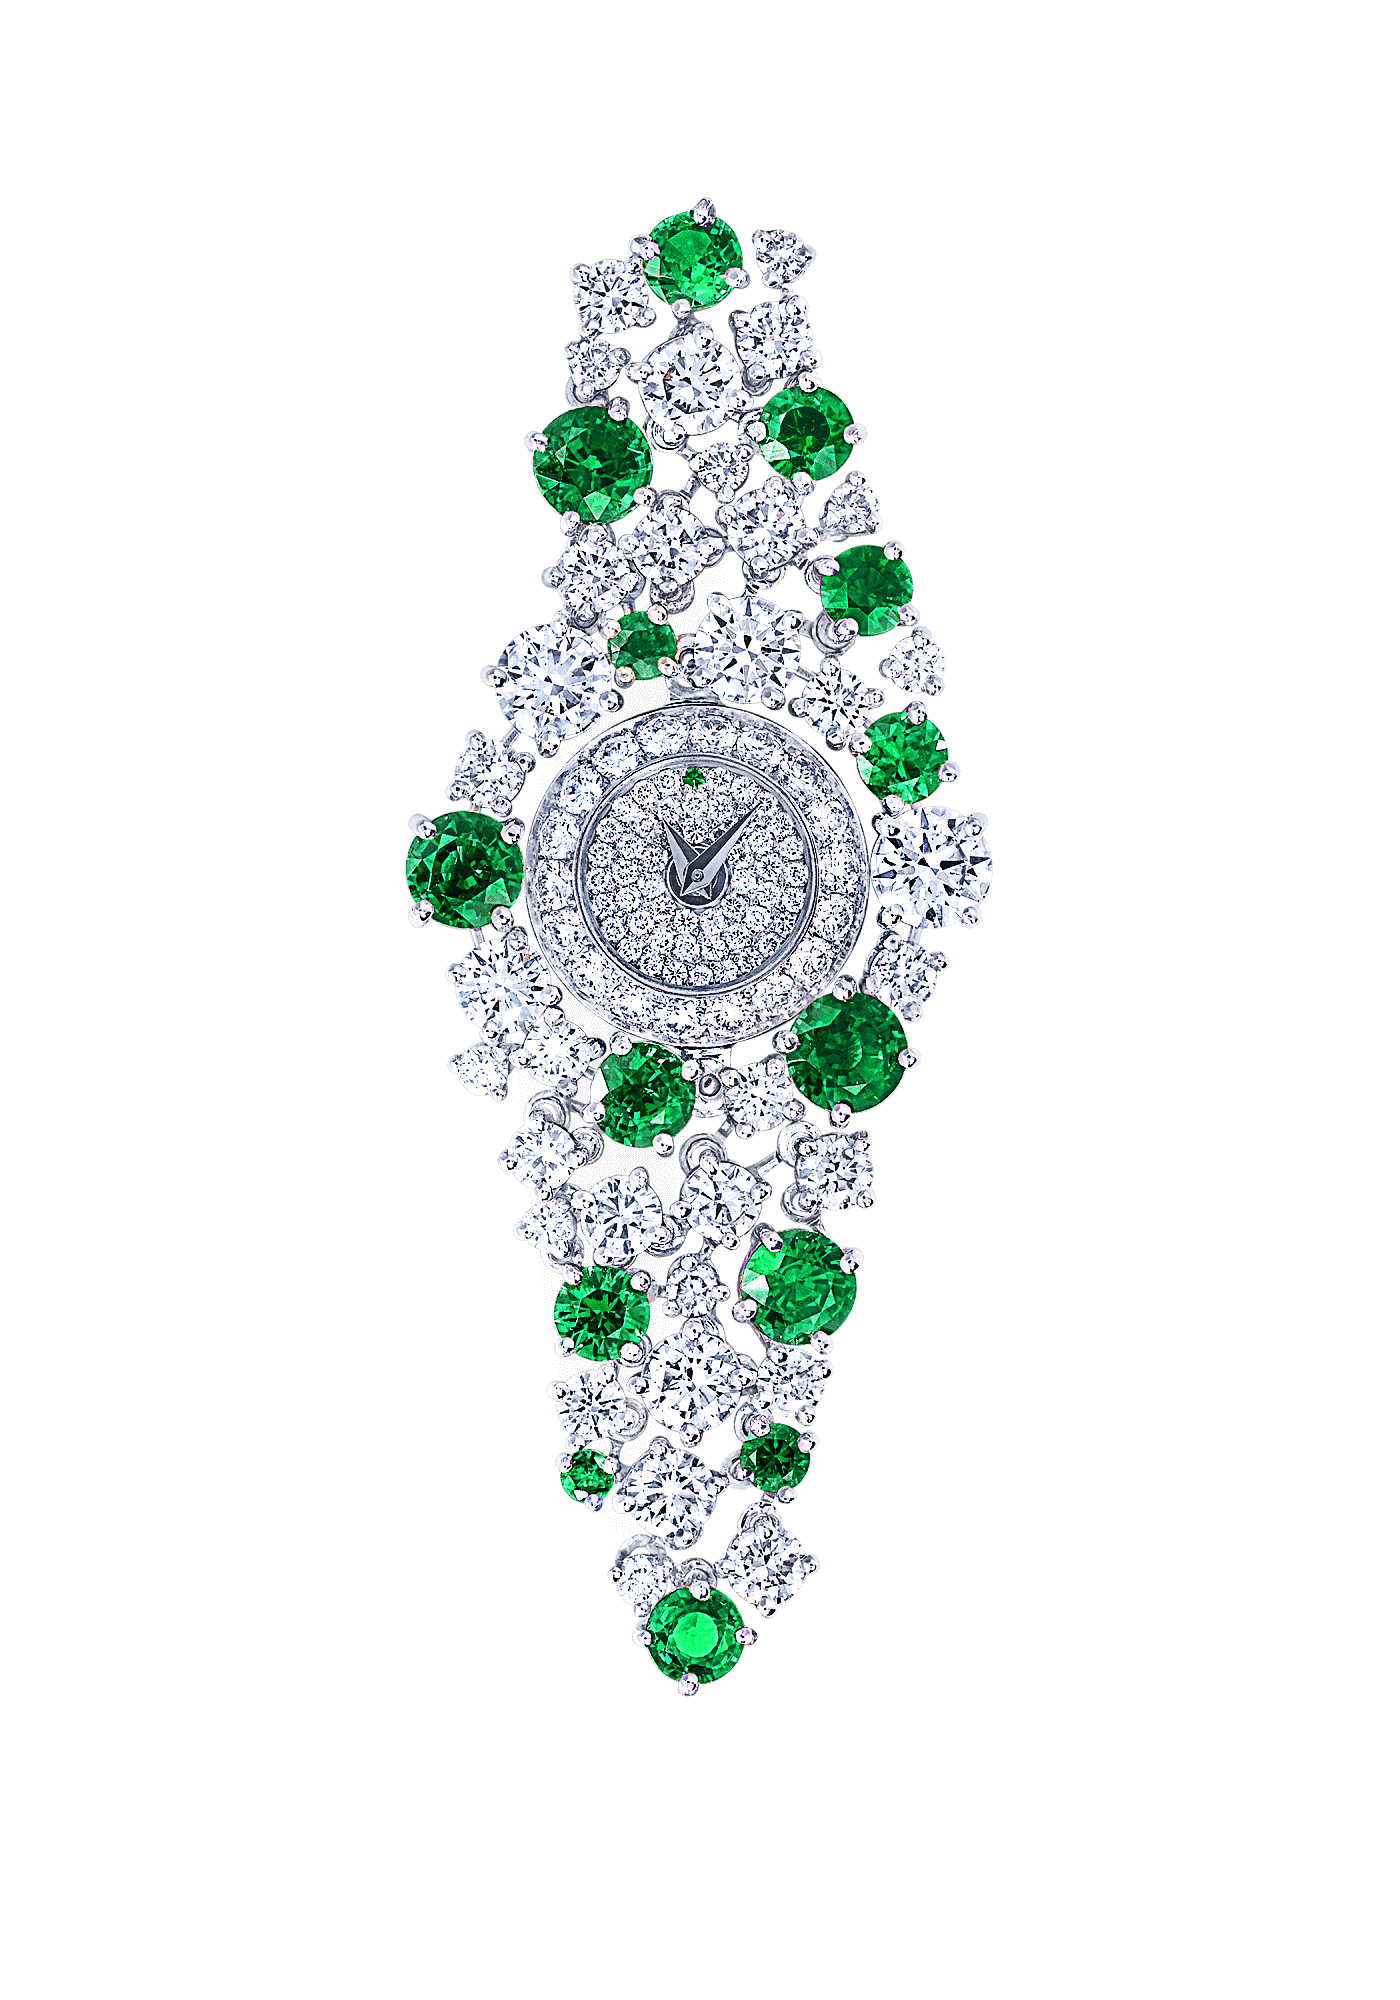 顶级珠宝品牌GRAFF “美呆了”的女性钻石手表